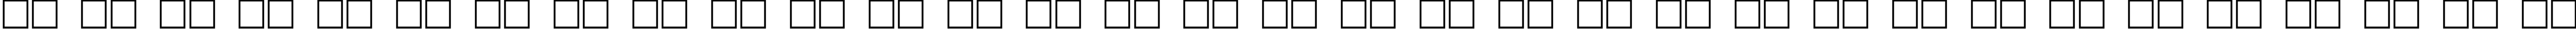 Пример написания русского алфавита шрифтом DOORJAM